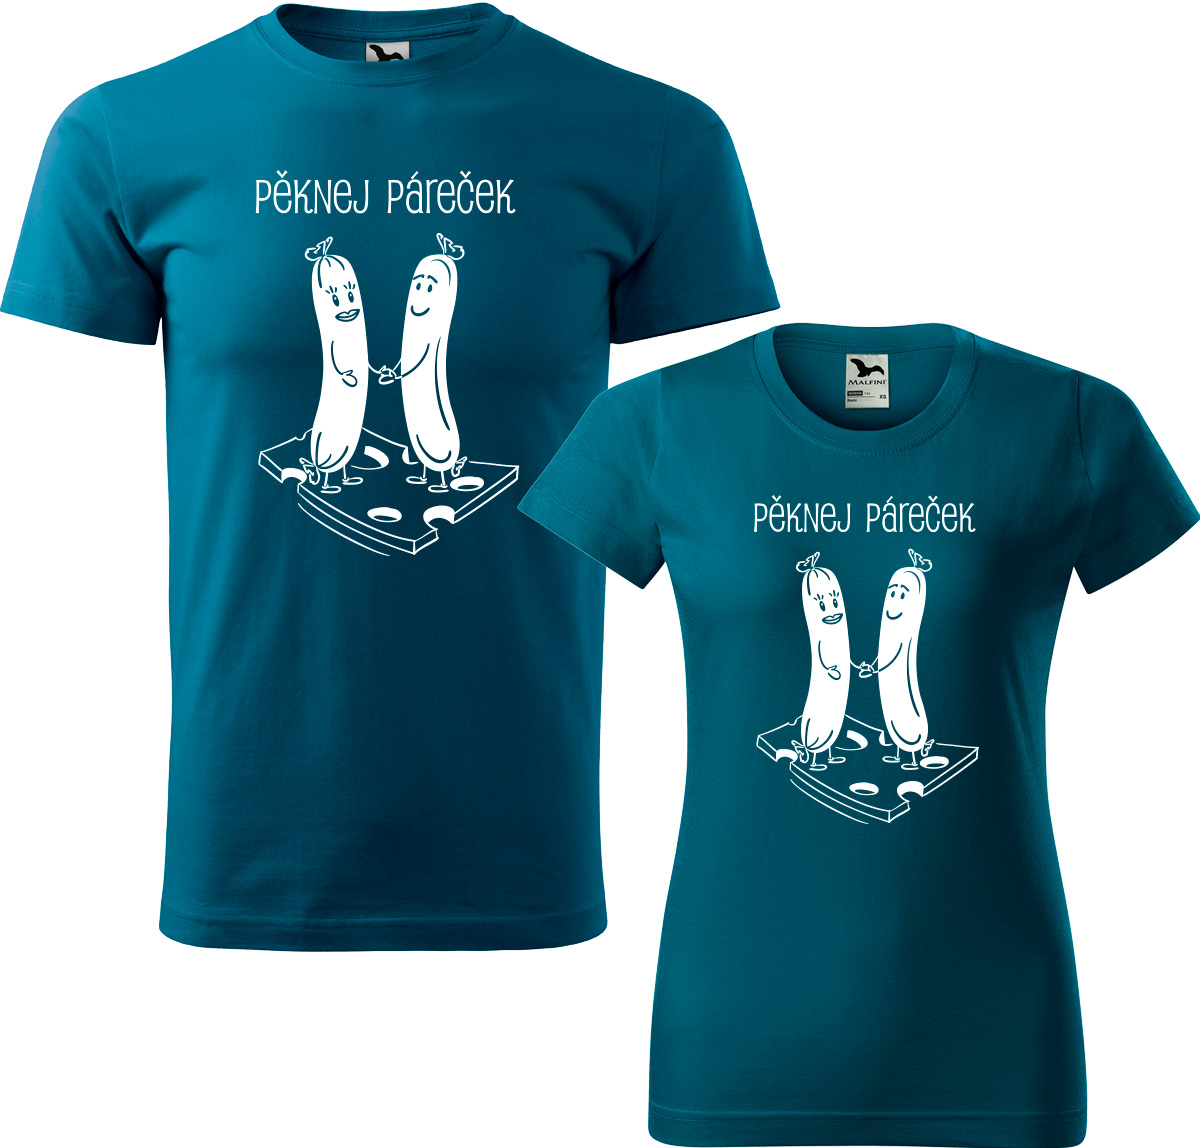 Trička pro páry - Pěknej páreček Barva: Petrolejová (93), Velikost dámské tričko: L, Velikost pánské tričko: L